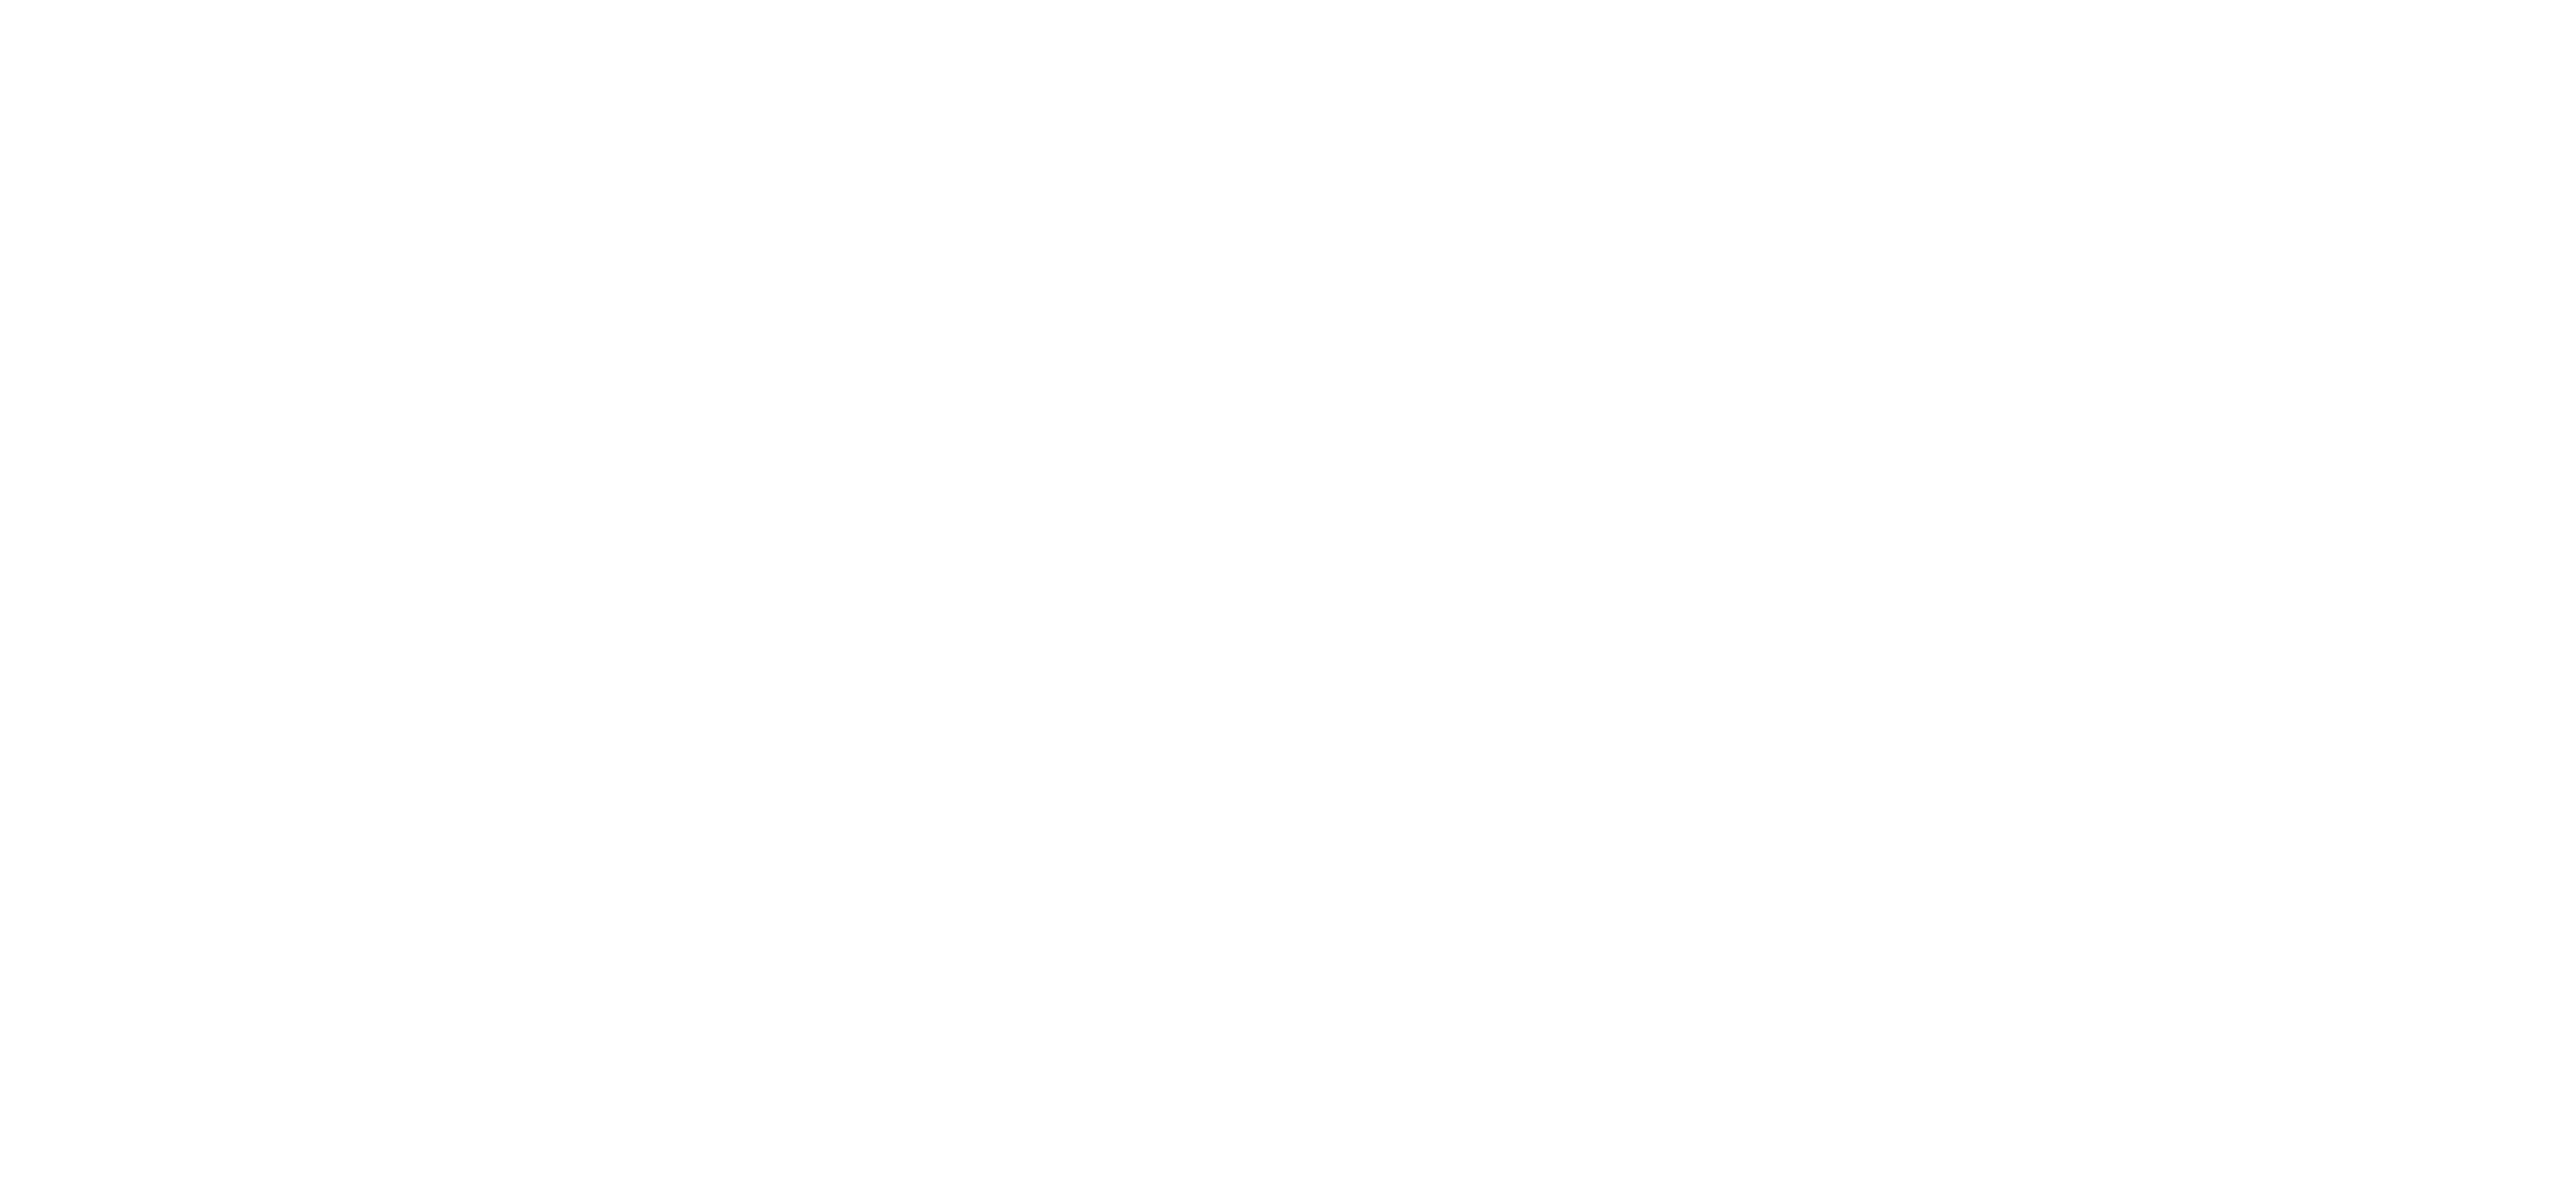 Renaissance Apartment Homes corporate logo